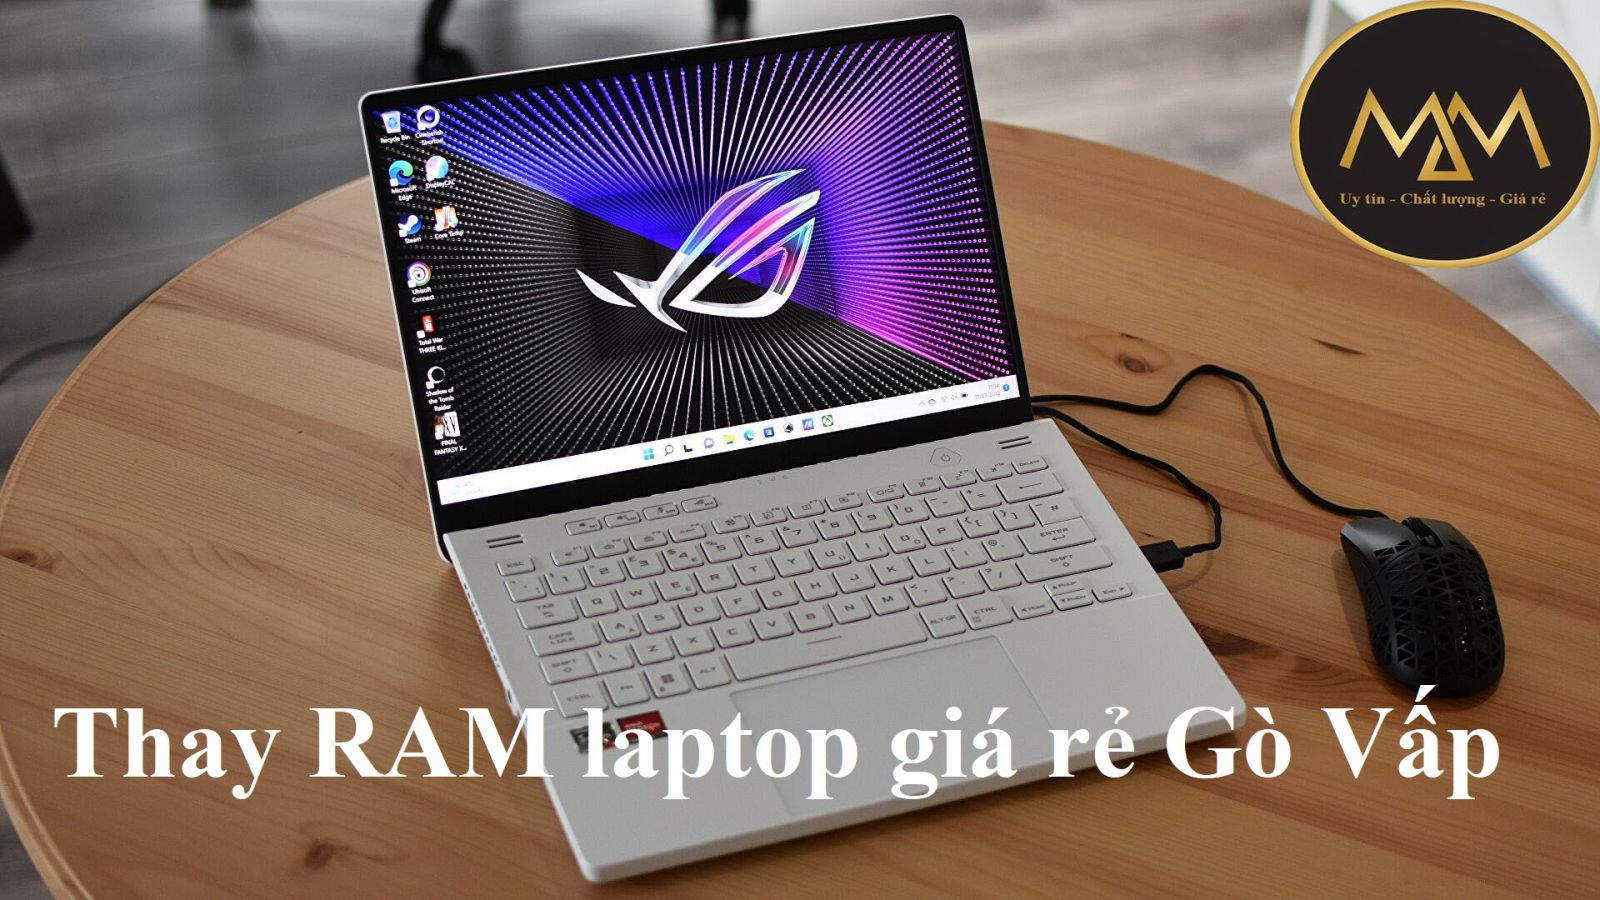 Thay RAM laptop giá rẻ Gò Vấp